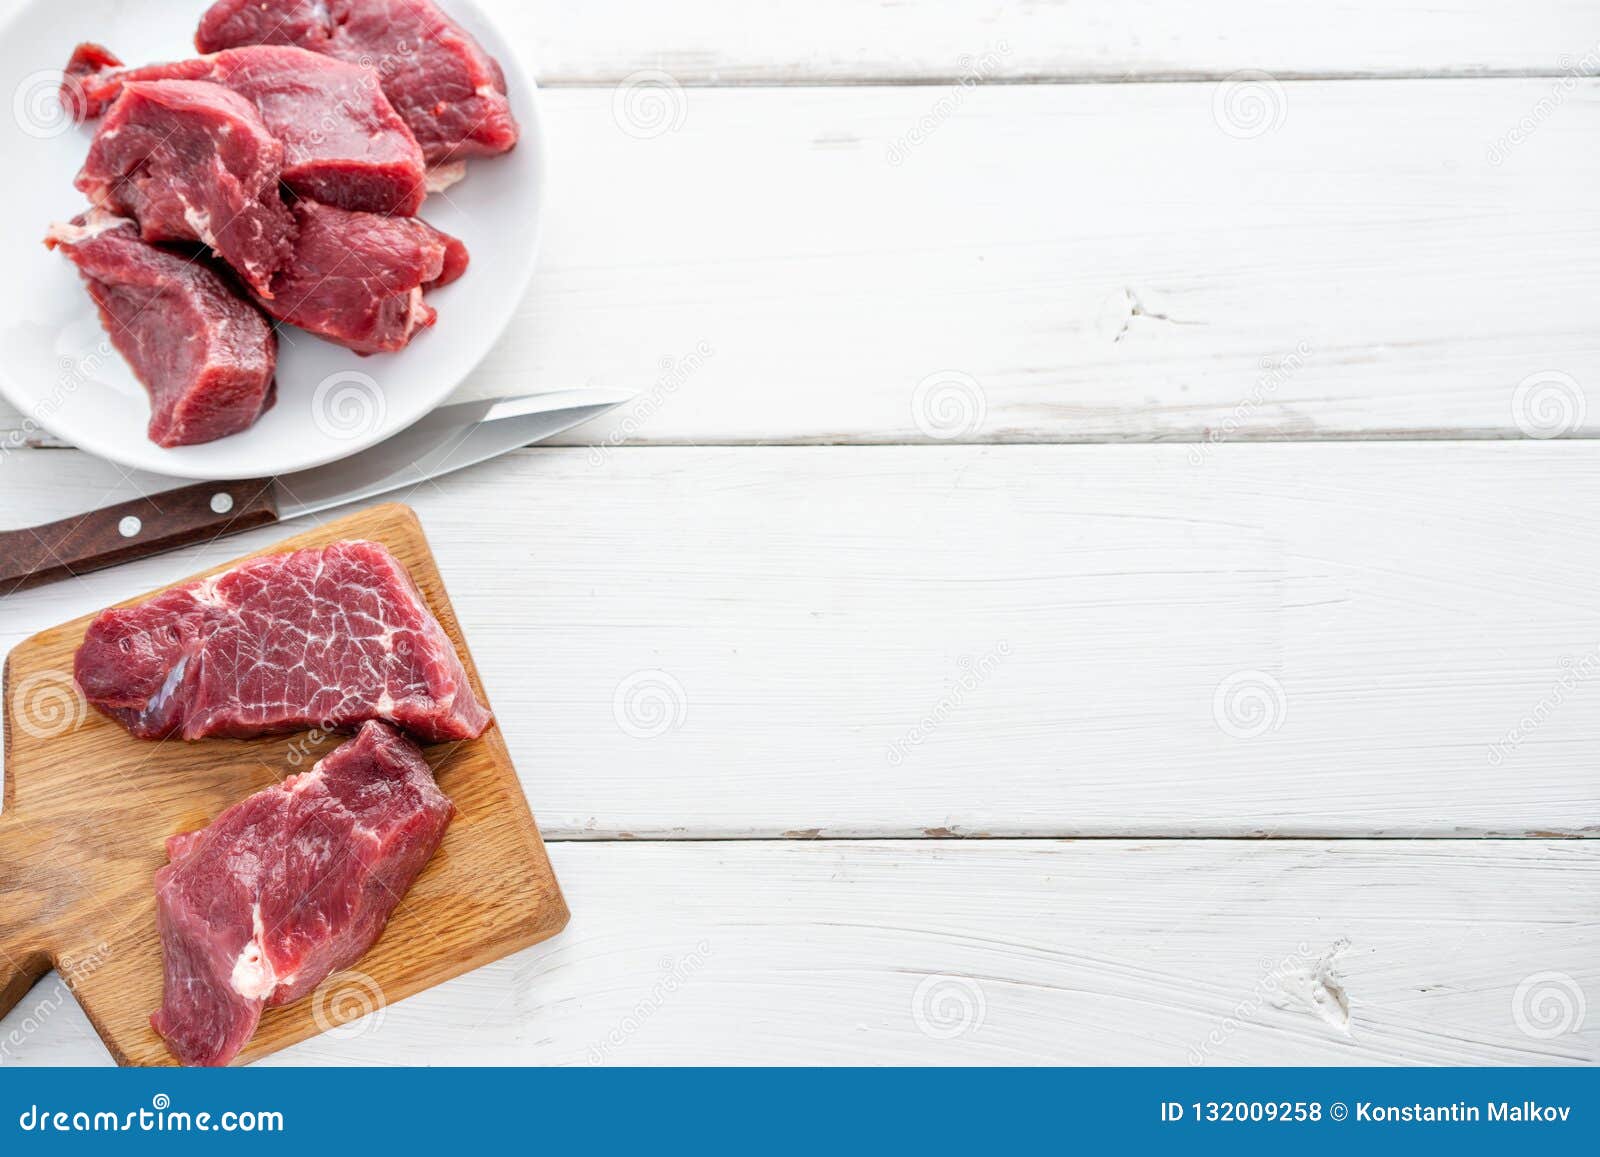 Снится мясо сырое без крови говядина